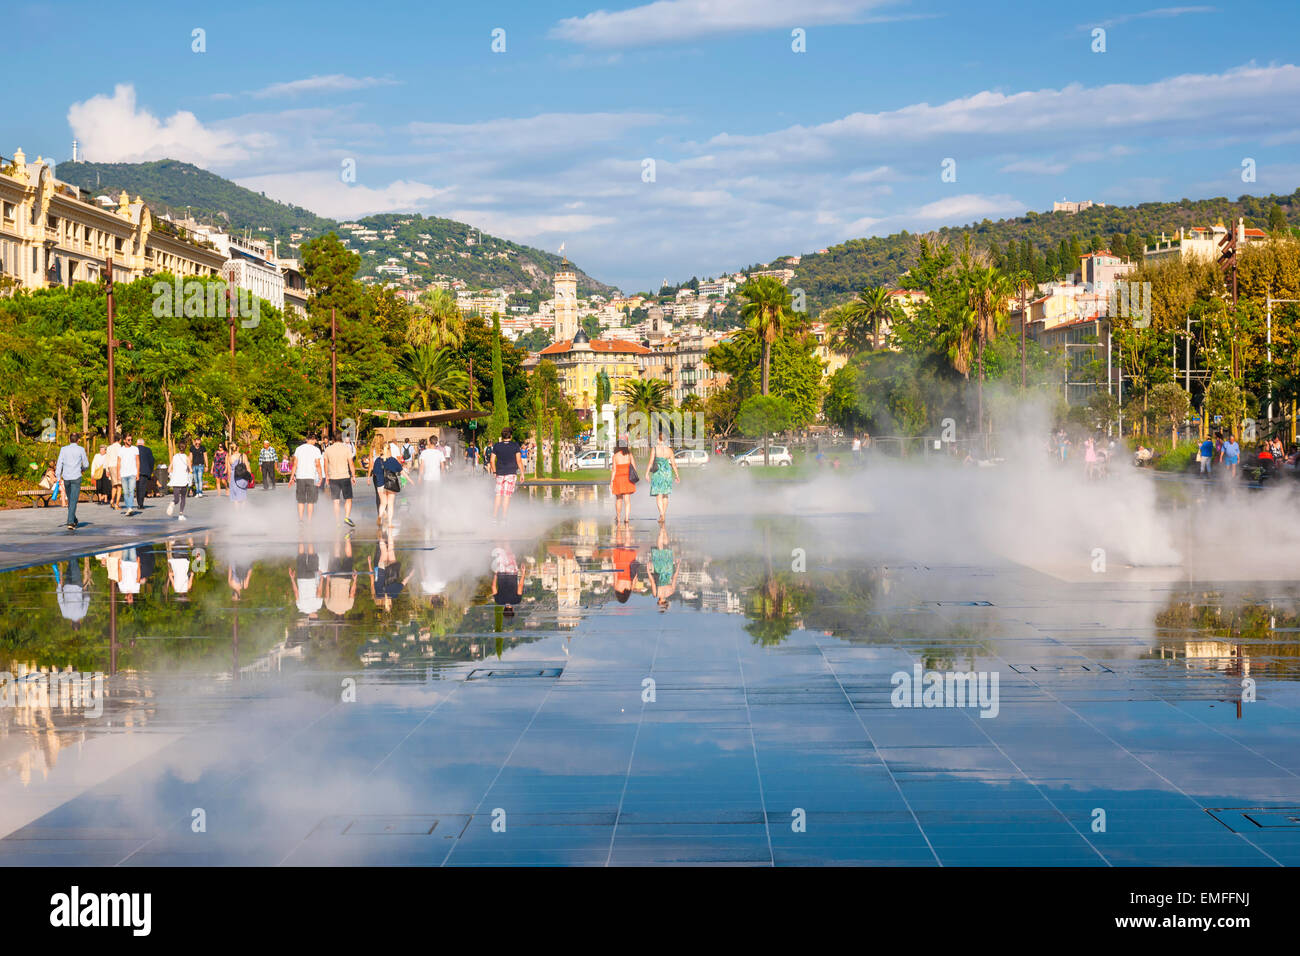 Nizza, Francia - 2 ottobre 2014: la gente camminare attraverso la fontana di imbibizione sulla Promenade du Paillon riflettendo la città e surround Foto Stock